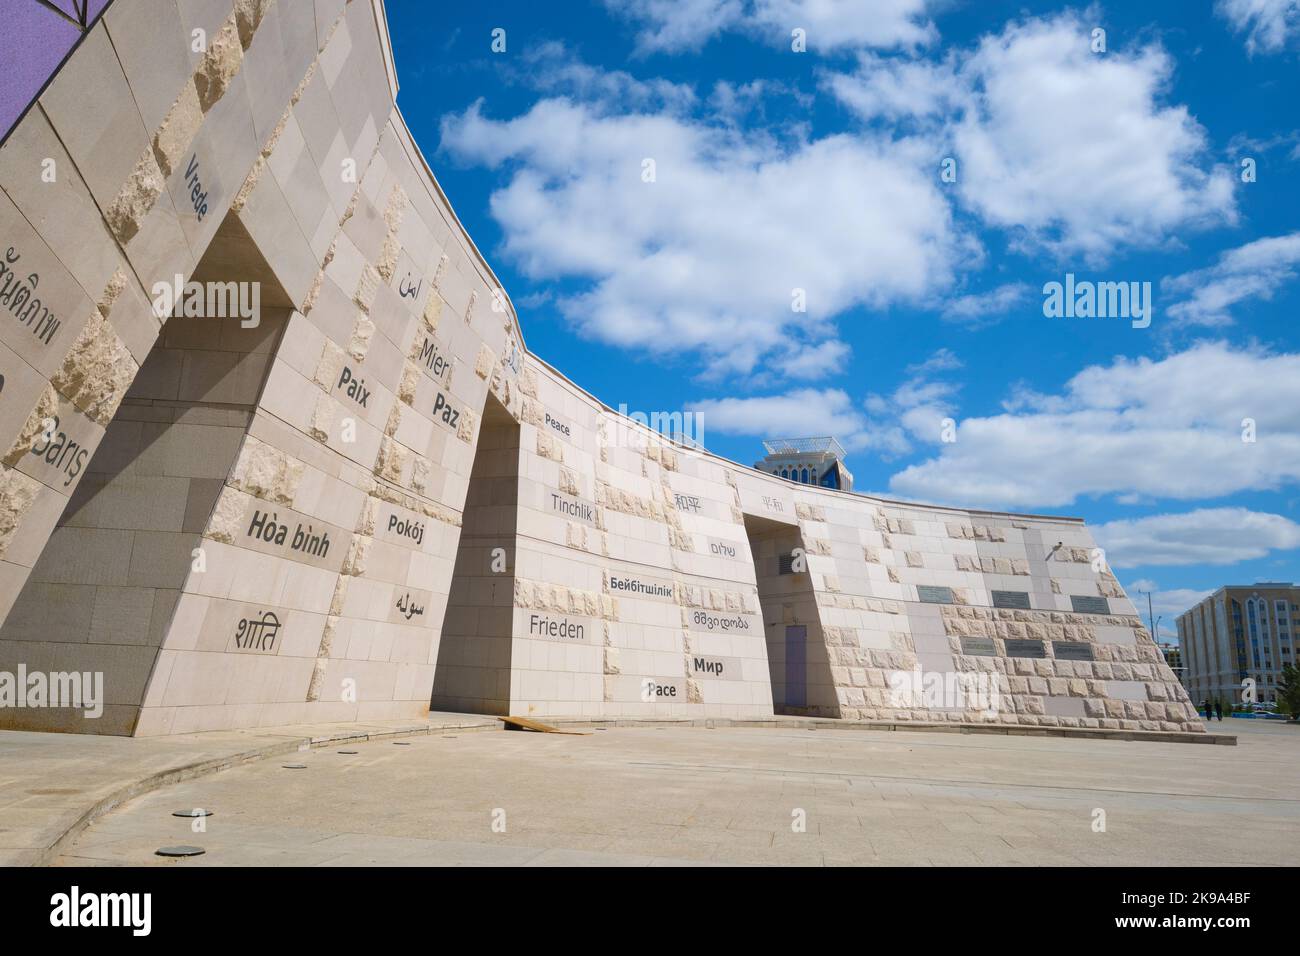 Vue détaillée du mémorial du mur de la paix, avec diverses citations sur le mur de pierre. À Astana, Nursultan, Kazakhstan. Banque D'Images